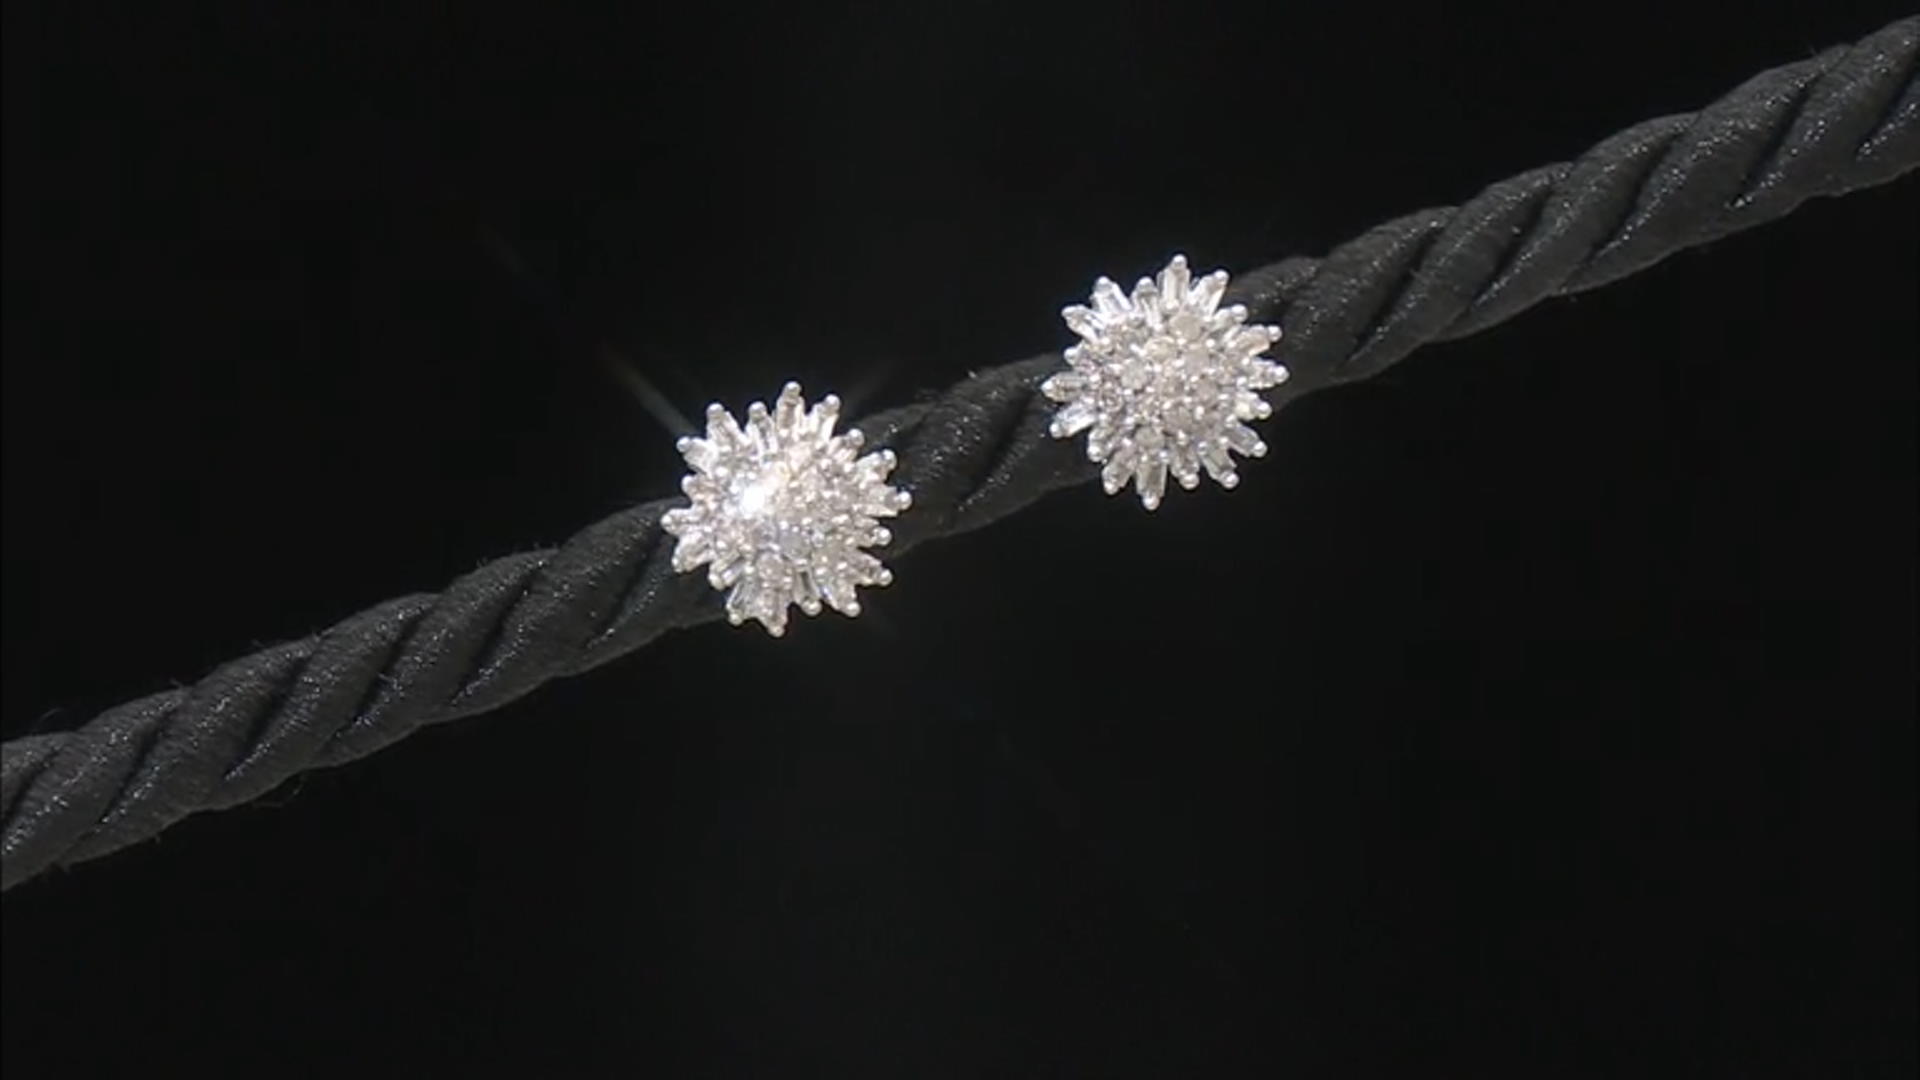 White Diamond 10k White Gold Cluster Stud Earrings 0.50ctw Video Thumbnail